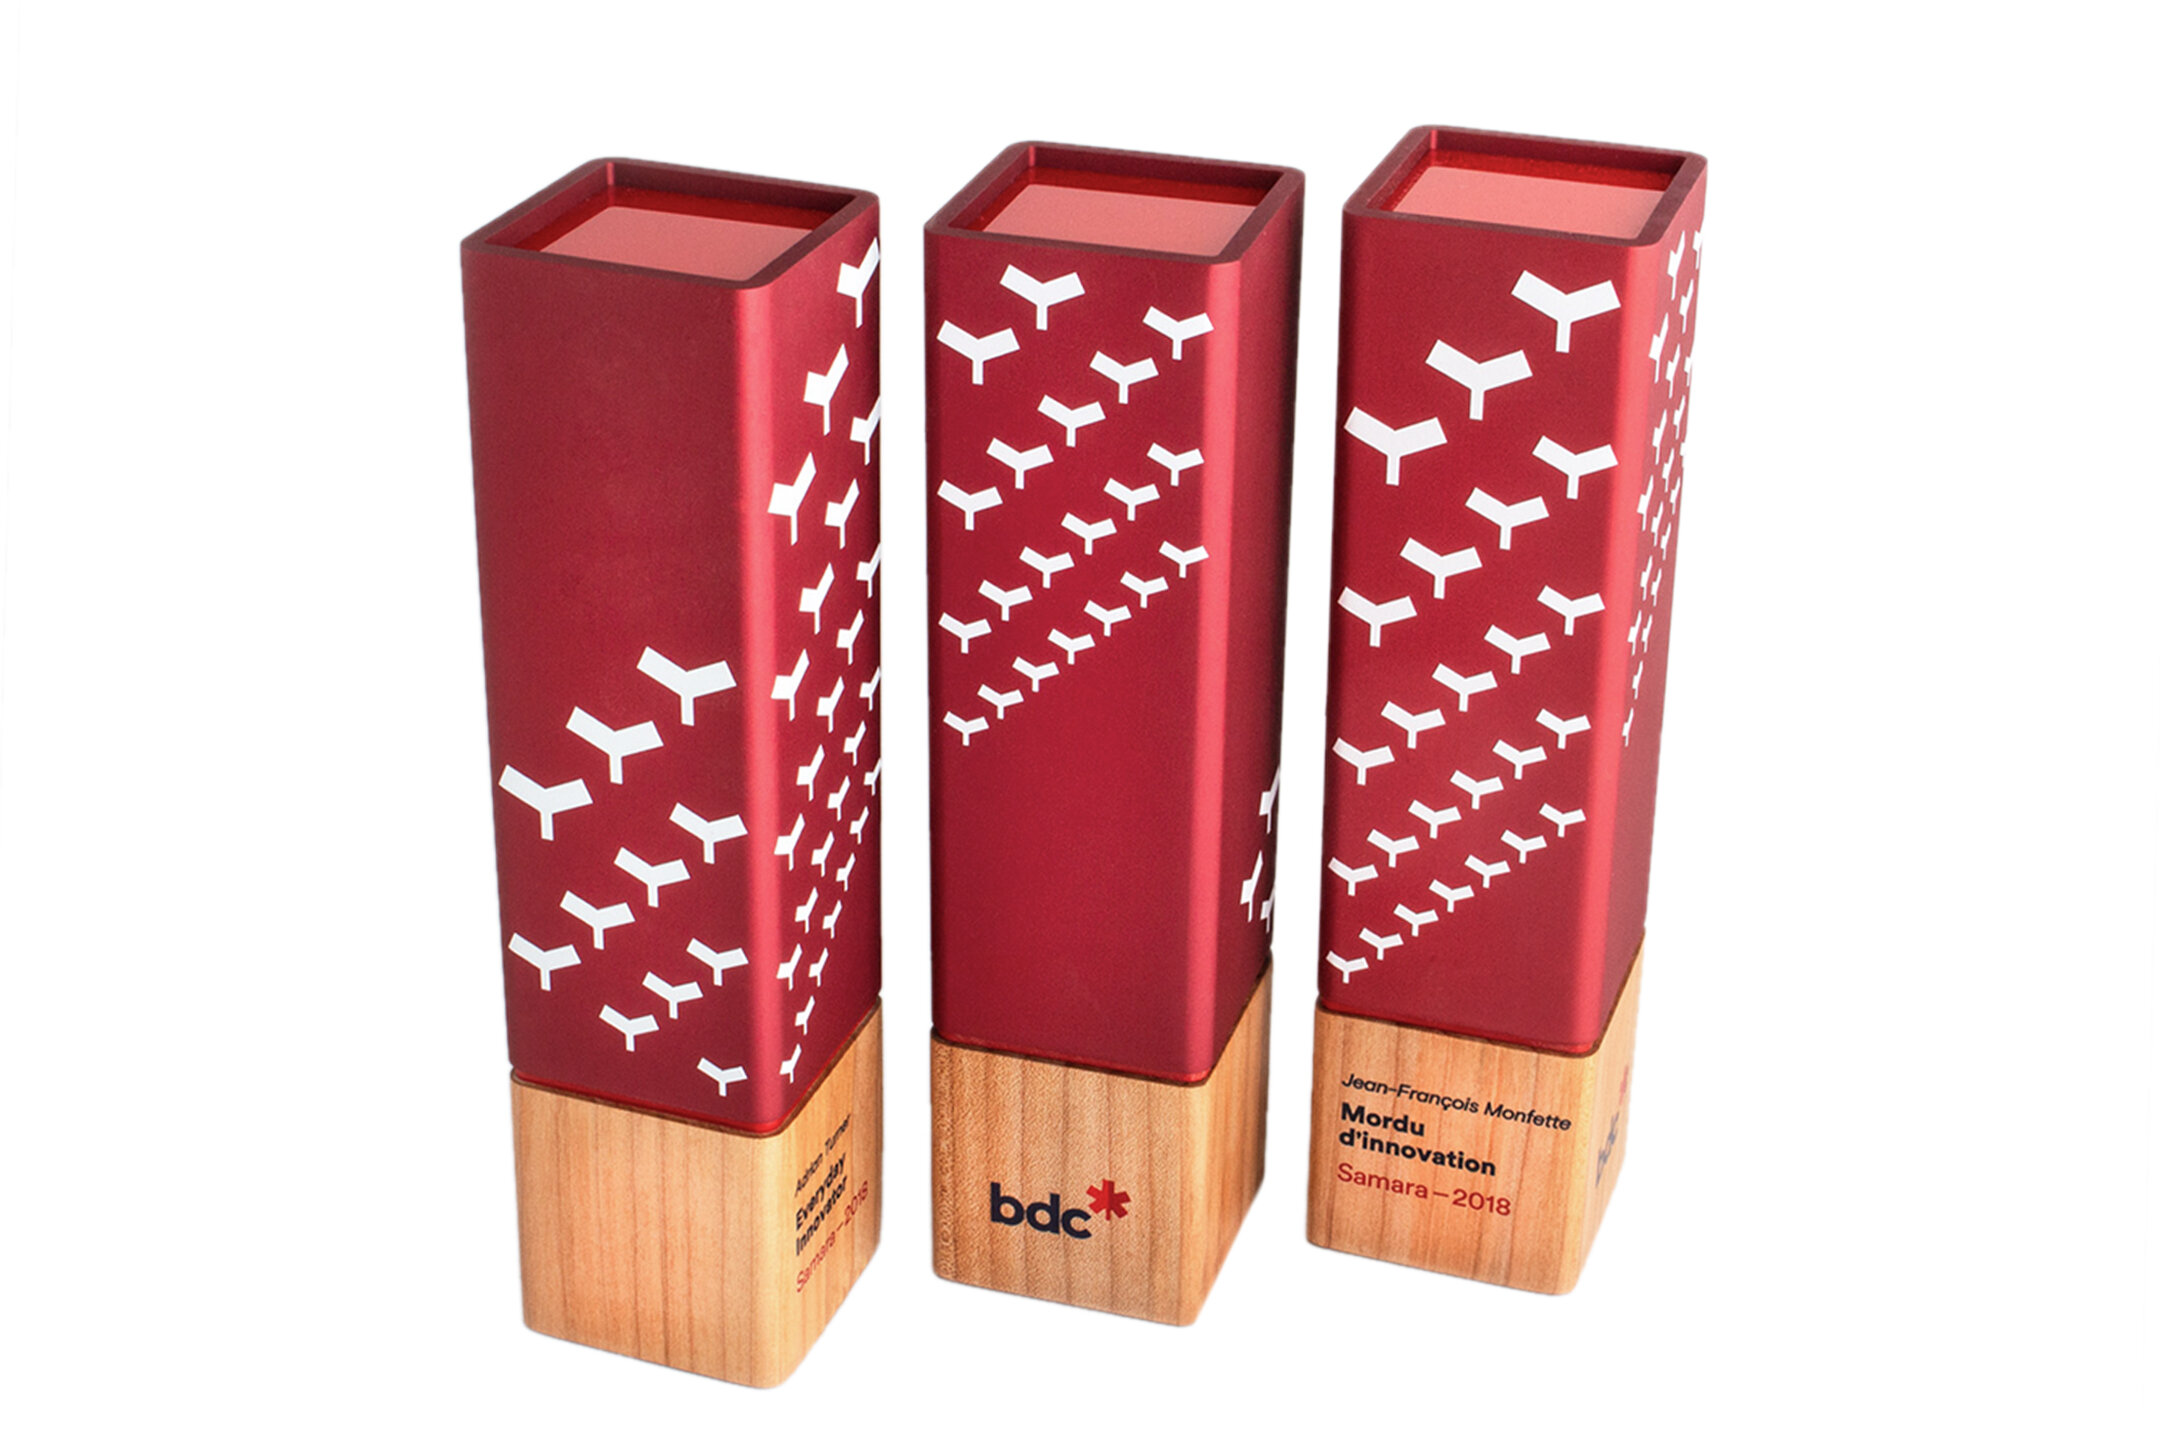 bdc sumara awards innovation